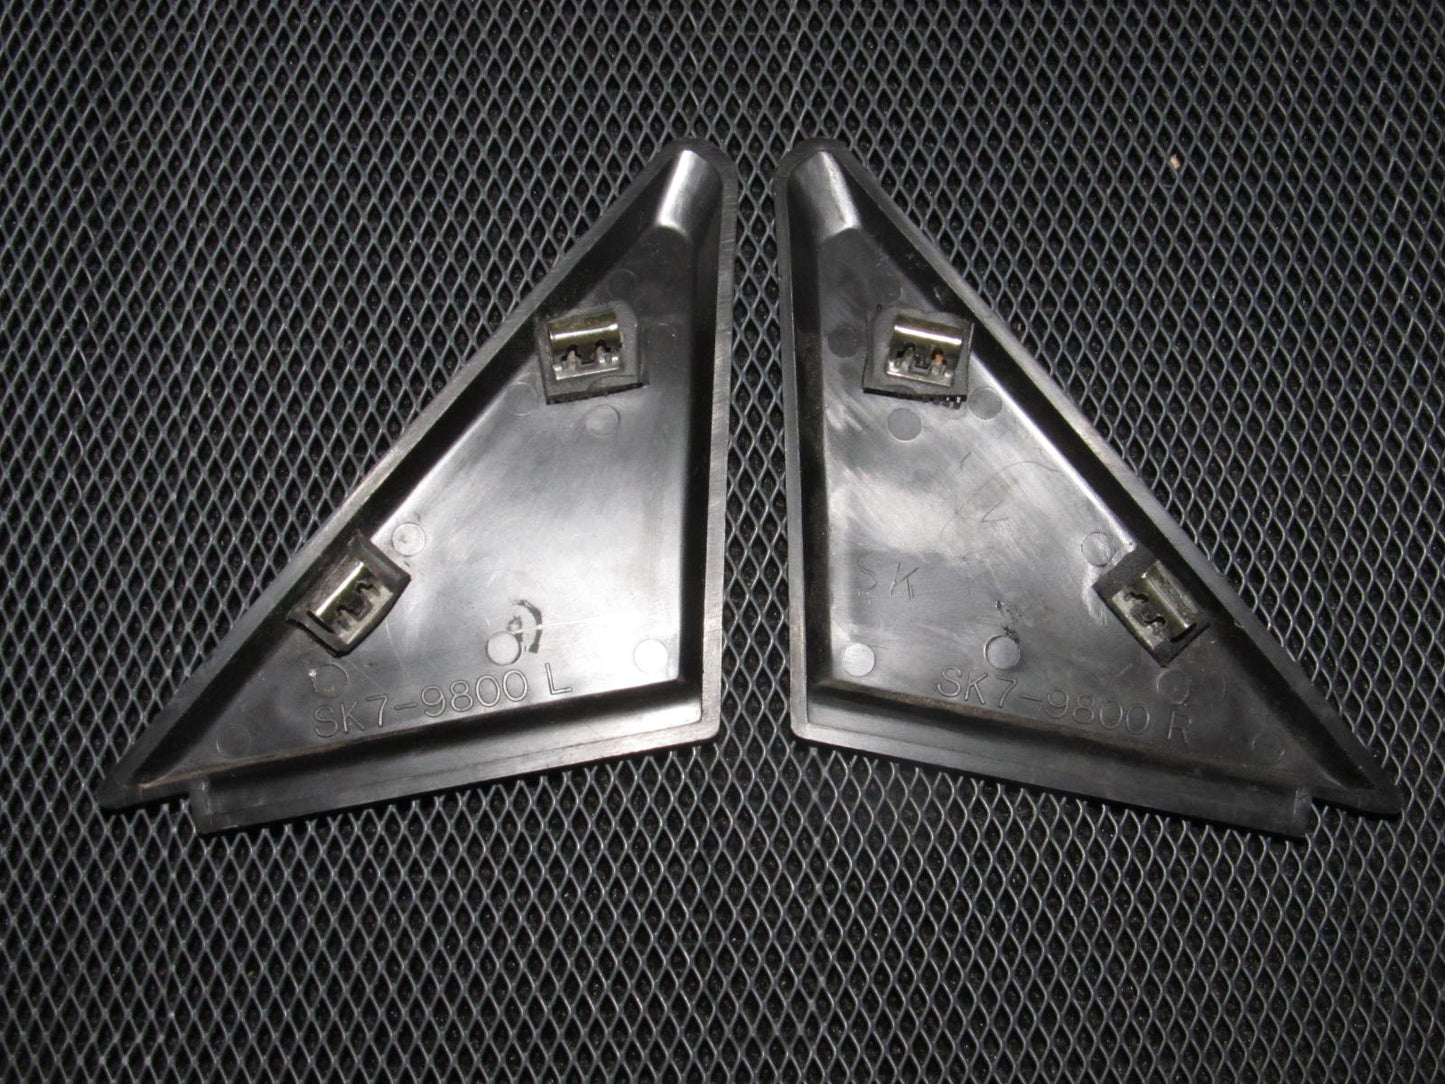 90-93 Acura Integra OEM Black Door Panel Mirror Cover Trim - 2 pieces